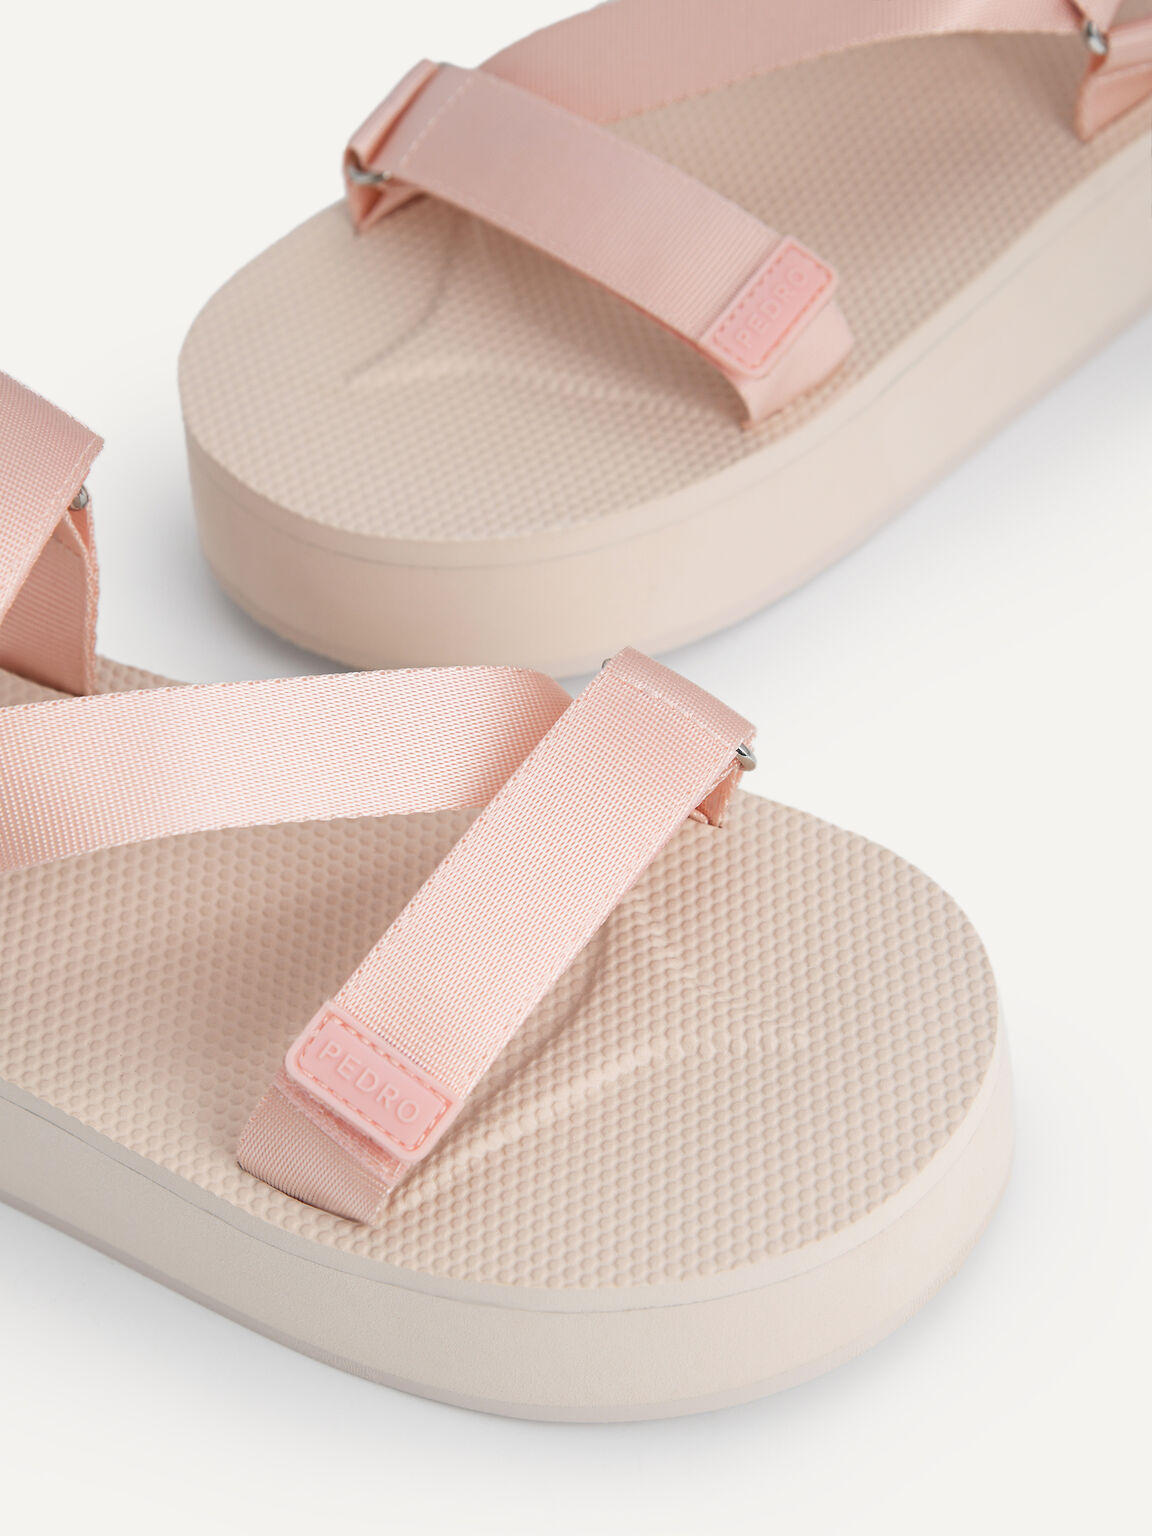 Flatform Sandals, Blush, hi-res